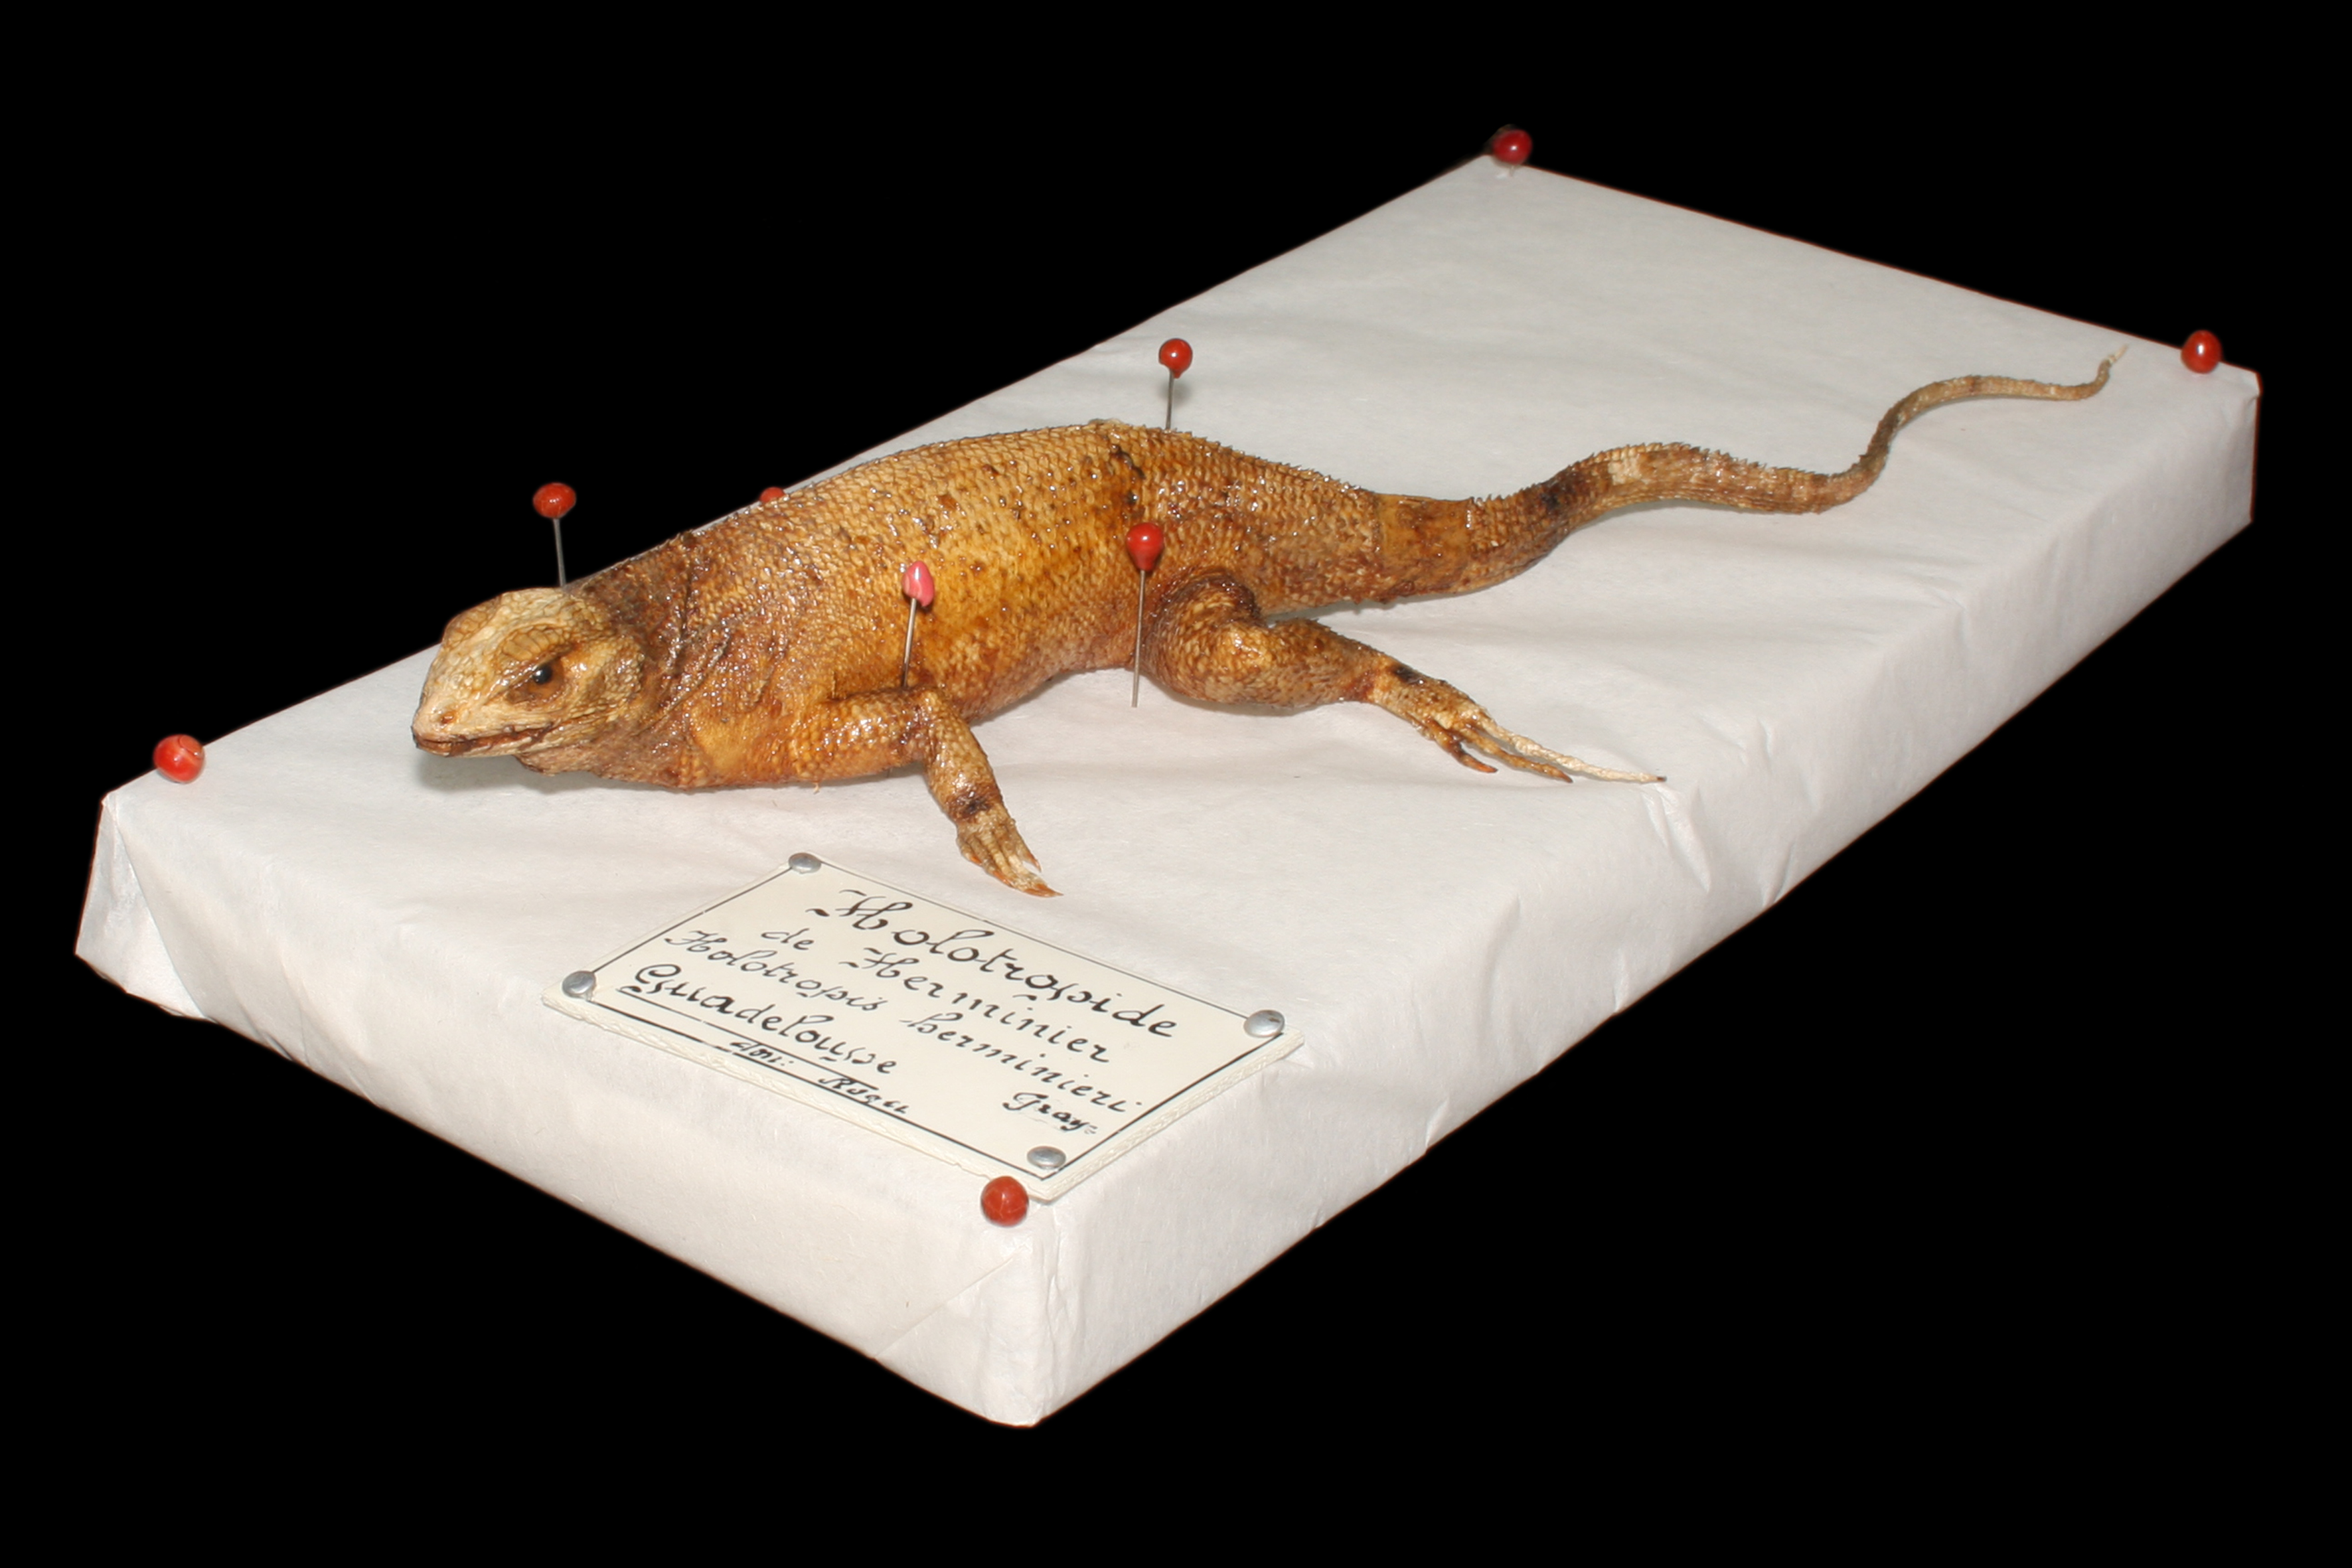 le Léiocéphale du Muséum de Bordeaux (don Roger 1835) : le seul représentant de ce taxon disparu de Guadeloupe. Une espèce éteinte avant d’avoir été décrite ; crédit : Laurent Charles, Muséum de Bordeaux - Sciences et Nature